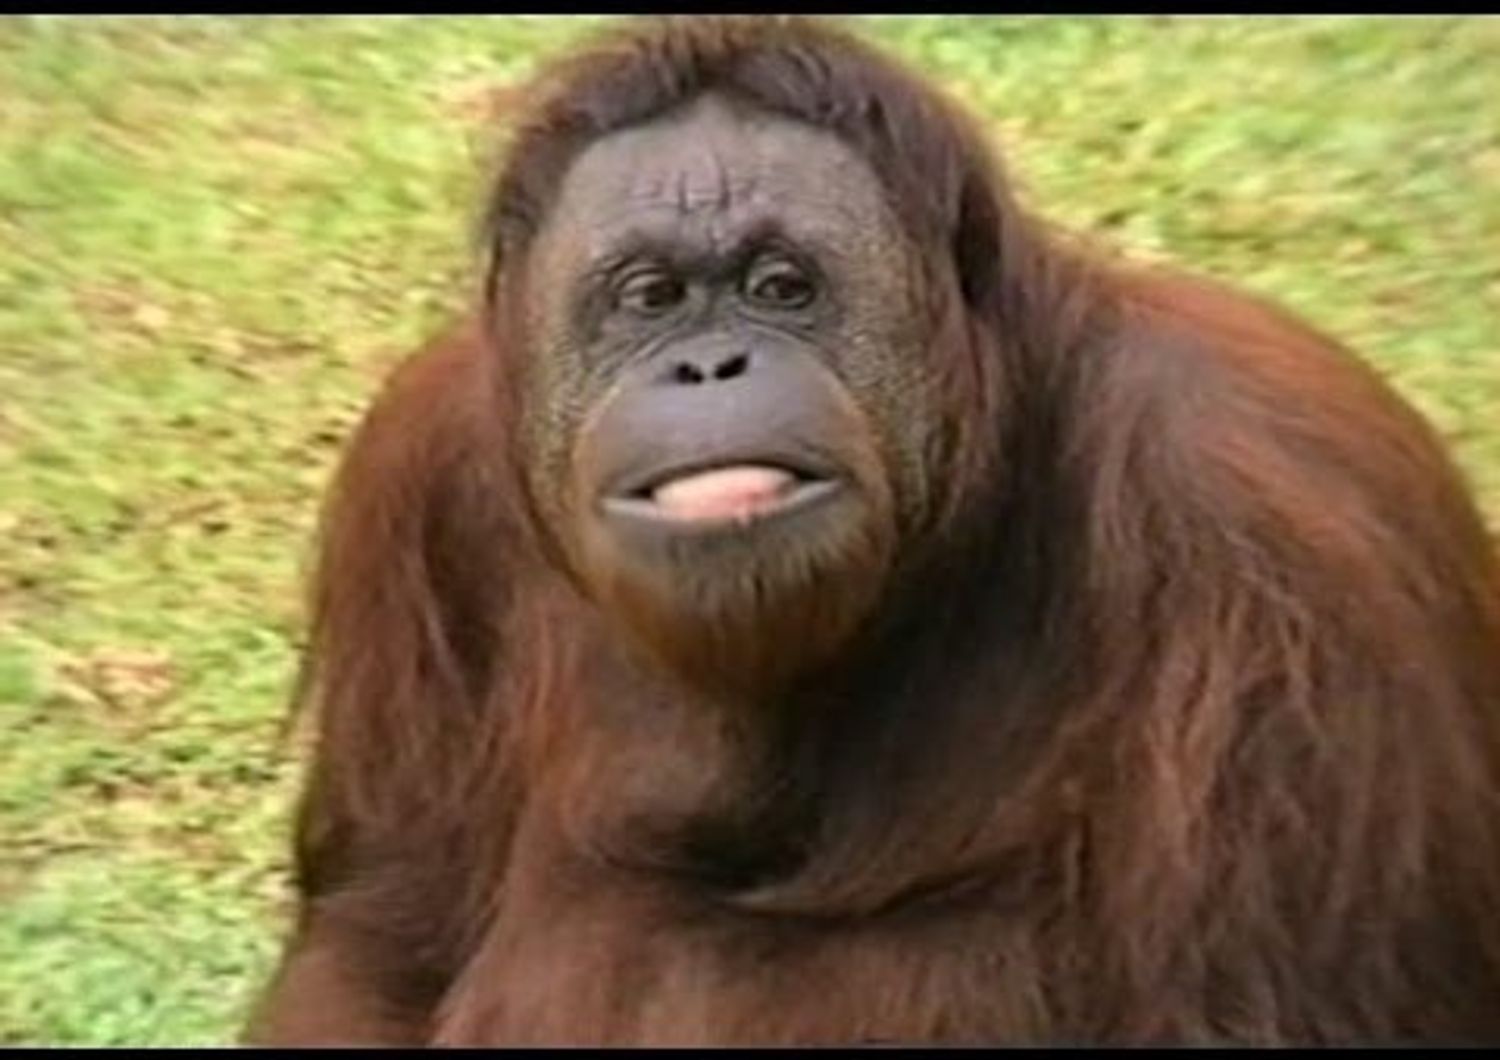 Anche gli oranghi potranno scegliere il partner su Tinder